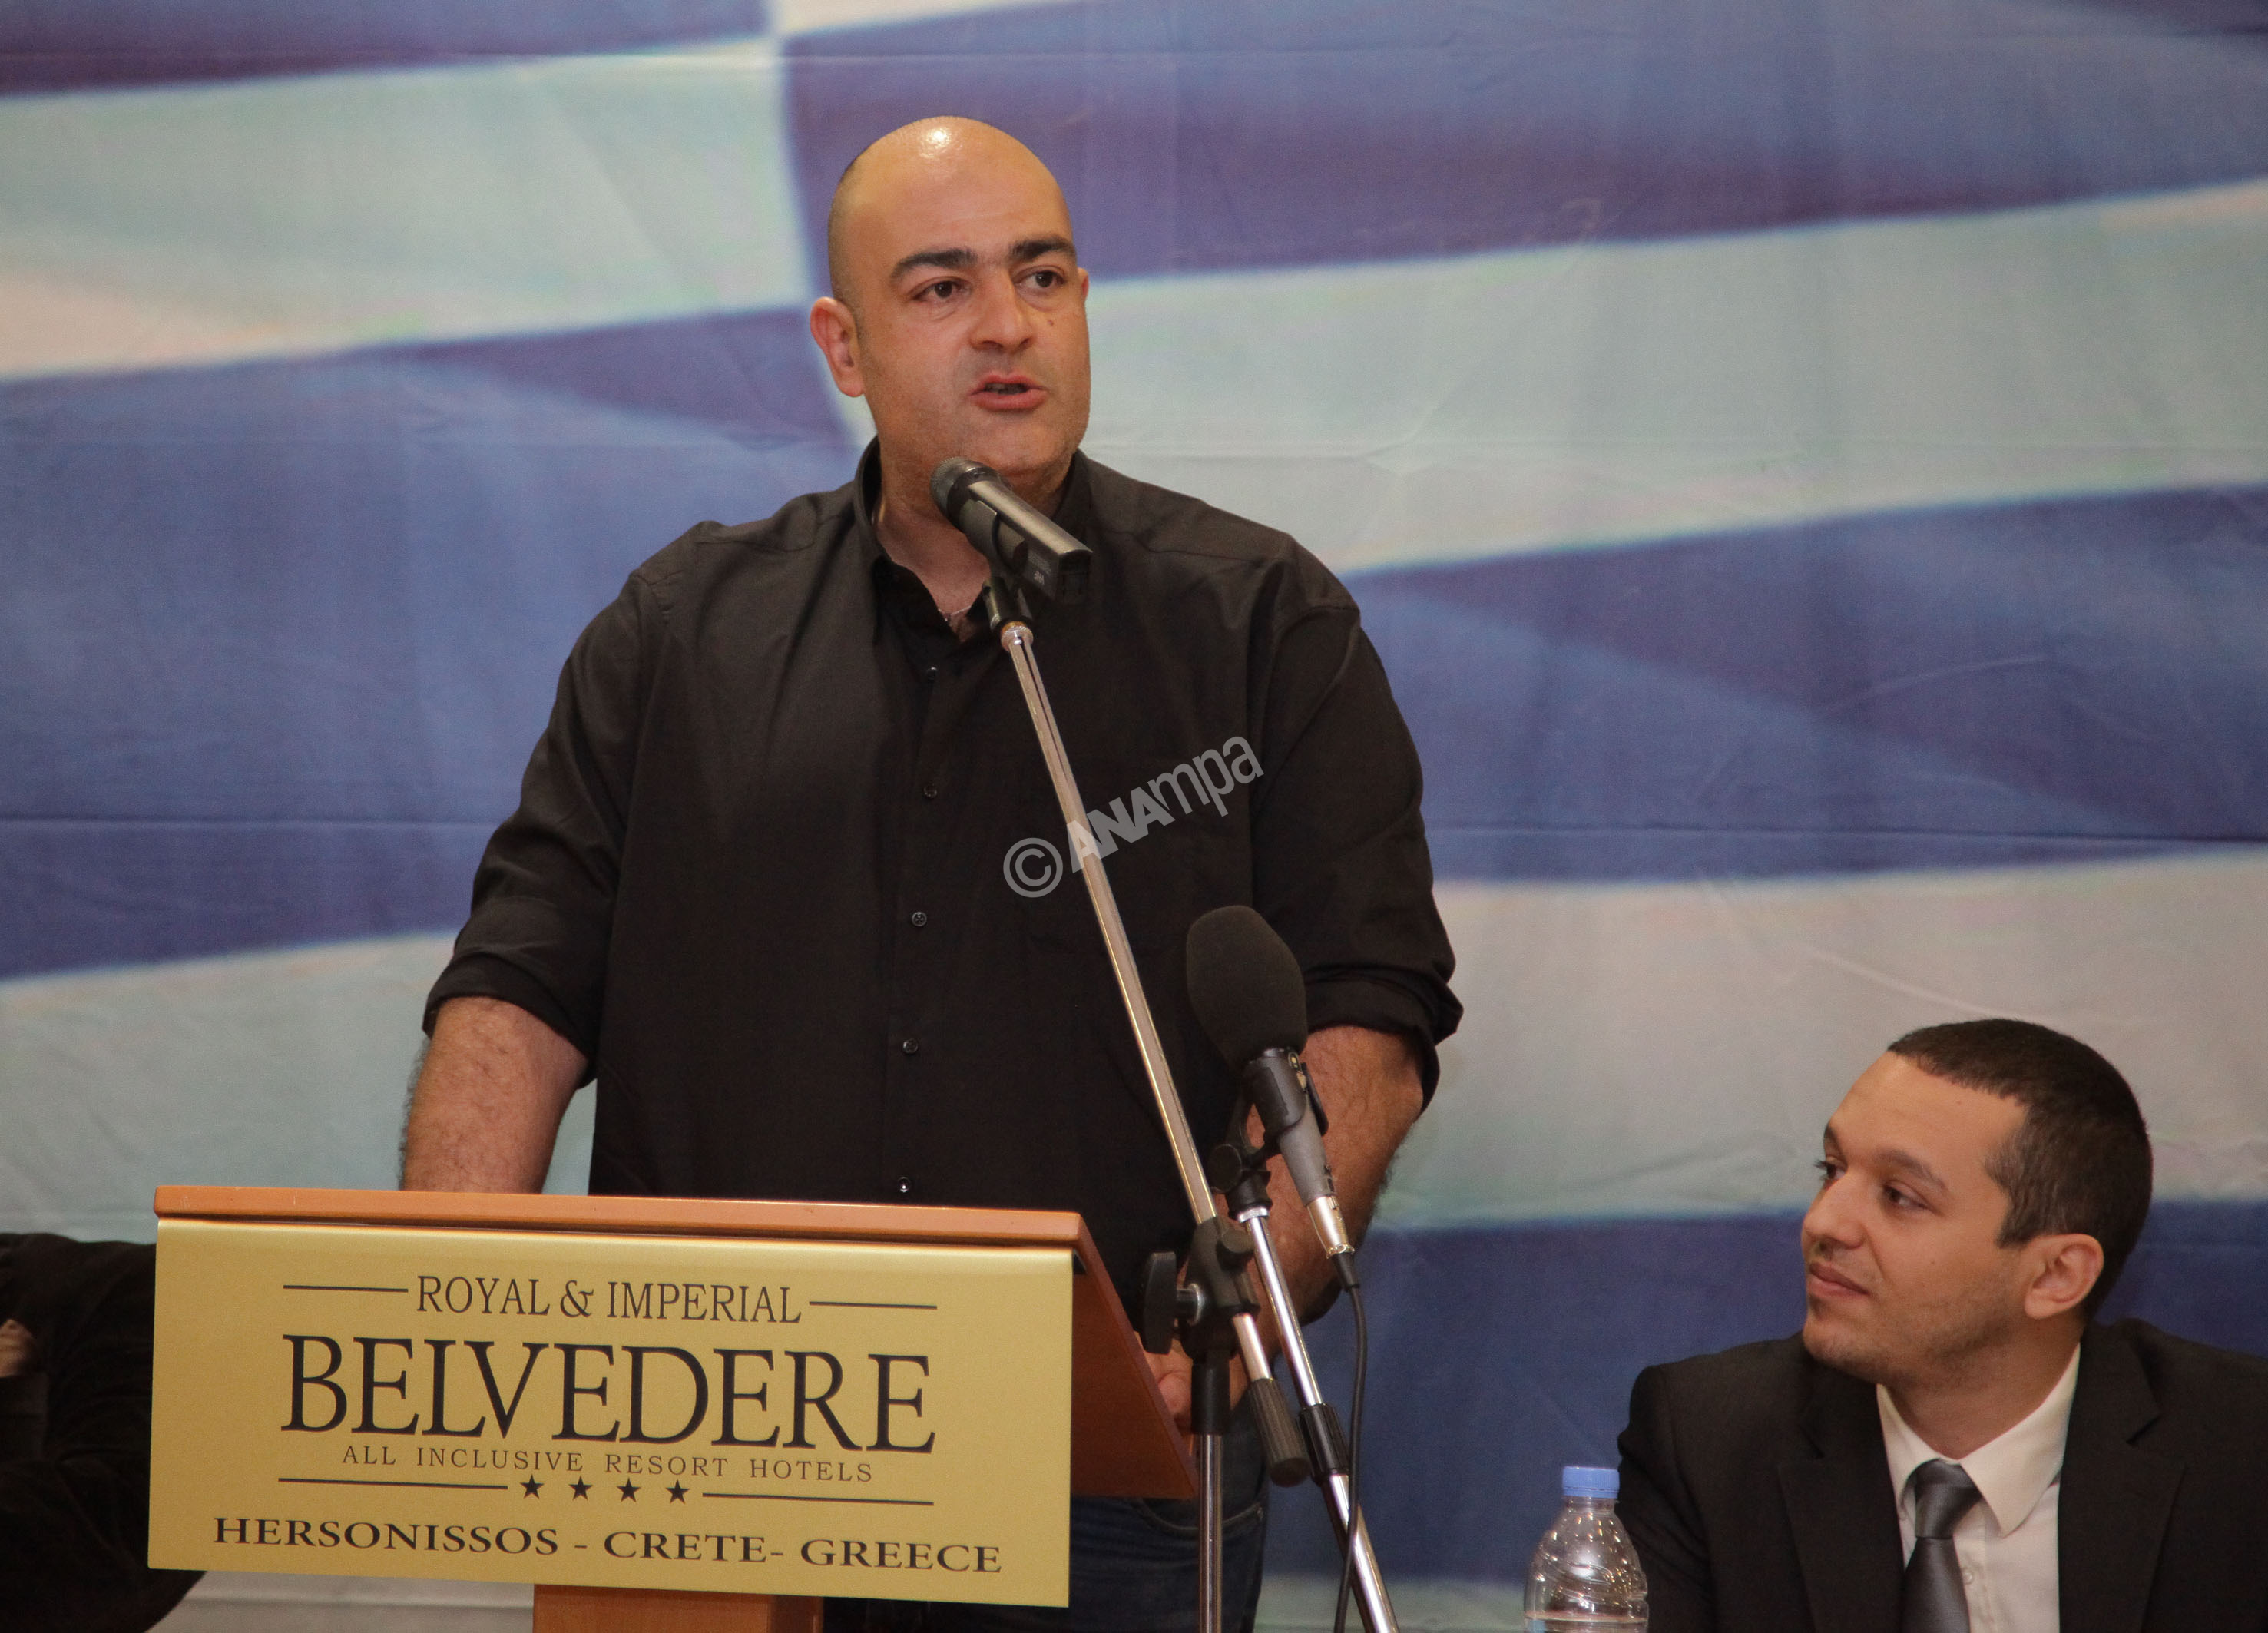 Στο βήμα μιλάει ο υποψήφιος περιφερειάρχης Κρήτης Γιώργος Σπυρόπουλος στην εκδήλωση της Χρυσής Αυγής που πραγματοποιήθηκε στη Χερσόνησο στο Ηράκλειο για να ανακοινώσει τους υποψήφιους για τις επερχόμενες αυτοδιοικητικές εκλογές στη Κρήτη, με την παρουσία πρωτοκλασάτων στελεχών του κόμματος, Κυριακή 23 Φεβρουαρίου 2014. Το παρόν έδωσαν οι βουλευτές Ηλίας Κασιδιάρης, Ελένη Ζαρούλια, Ηλίας Παναγιώταρος, Δημήτρης Κουκούτσης και ο Μιχάλης Αρβανίτης. Ο Γιώργος Σπυρόπουλος εν ενεργεία αστυνομικός με καταγωγή από τα Σφακιά θα είναι ο υποψήφιος Περιφερειάρχης Κρήτης για τη Χρυσή Αυγή. ΑΠΕ-ΜΠΕ/ΑΠΕ-ΜΠΕ/ΣΤΕΦΑΝΟΣ ΡΑΠΑΝΗΣ